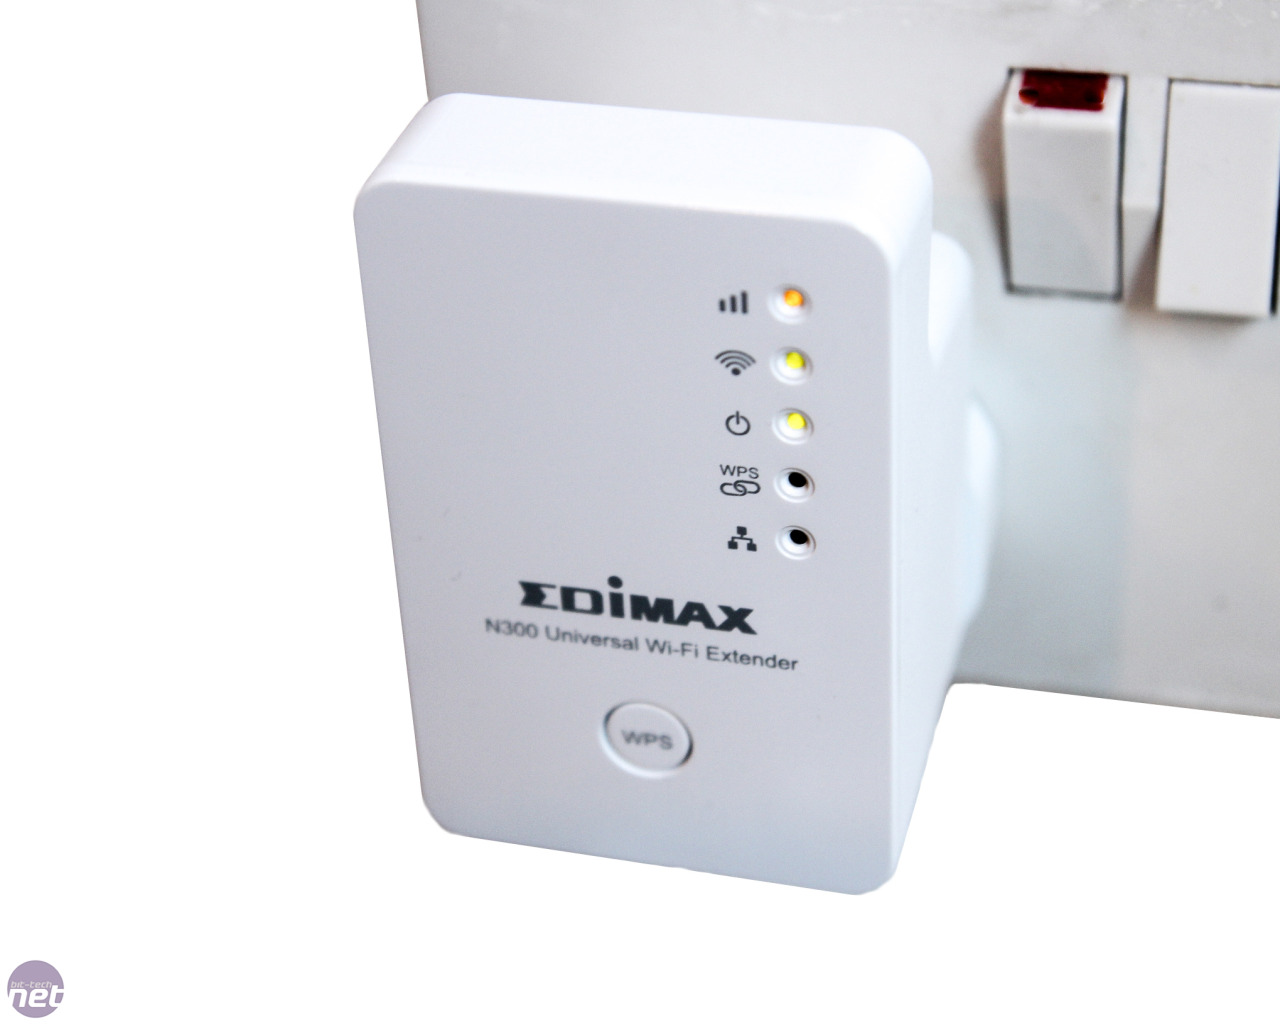 Edimax Wireless Routers N300 5 In 1 N300 Wi Fi Router Access Point Range Extender Wi Fi Bridge Wisp